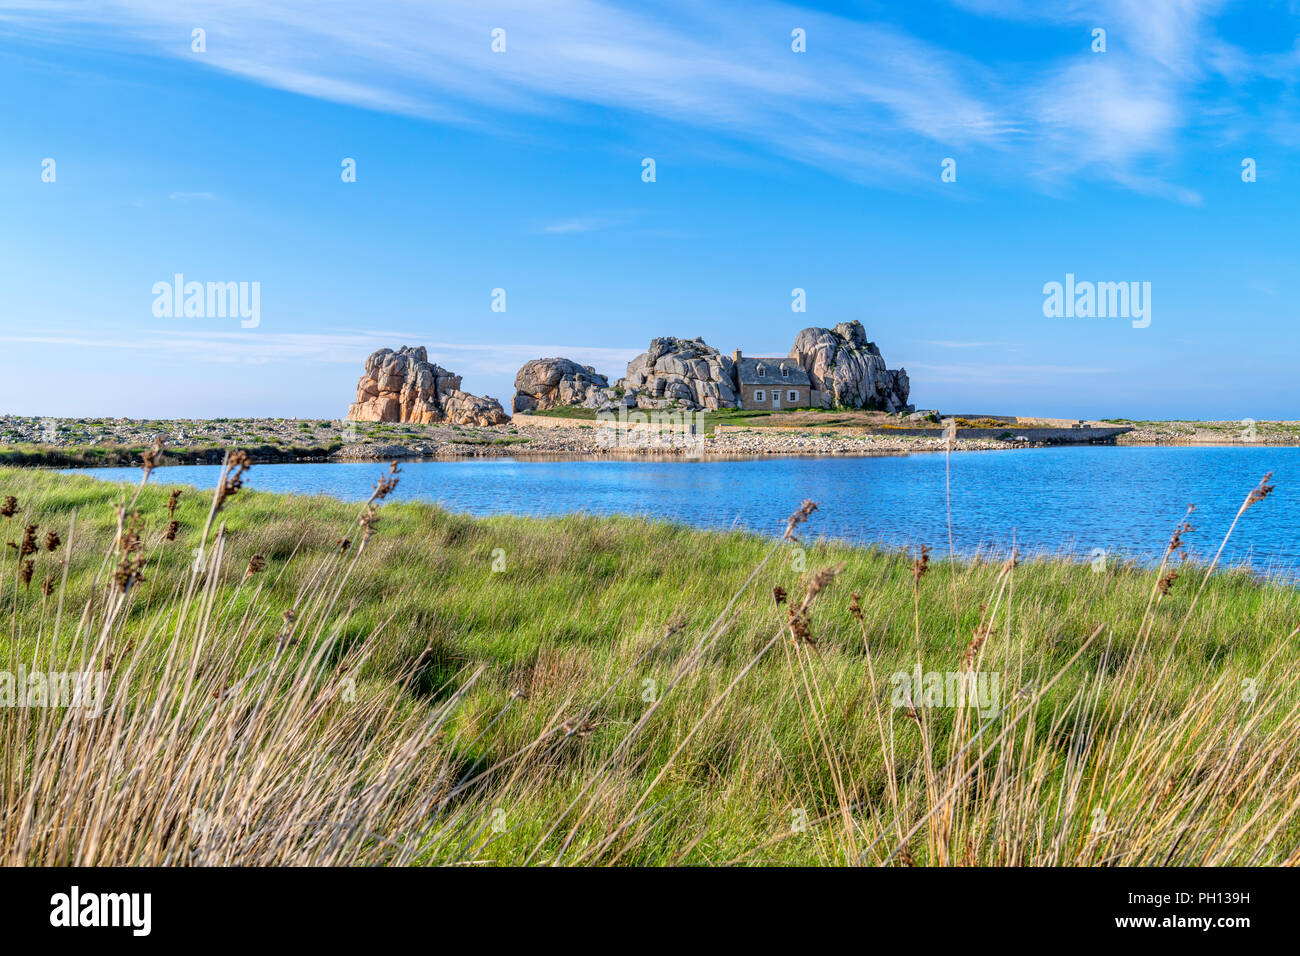 House Between Two Rocks, Le Gouffre du Castel-Meuru, Plougrescant, near Treguier, Cote de Granit Rose, Brittany, France Stock Photo